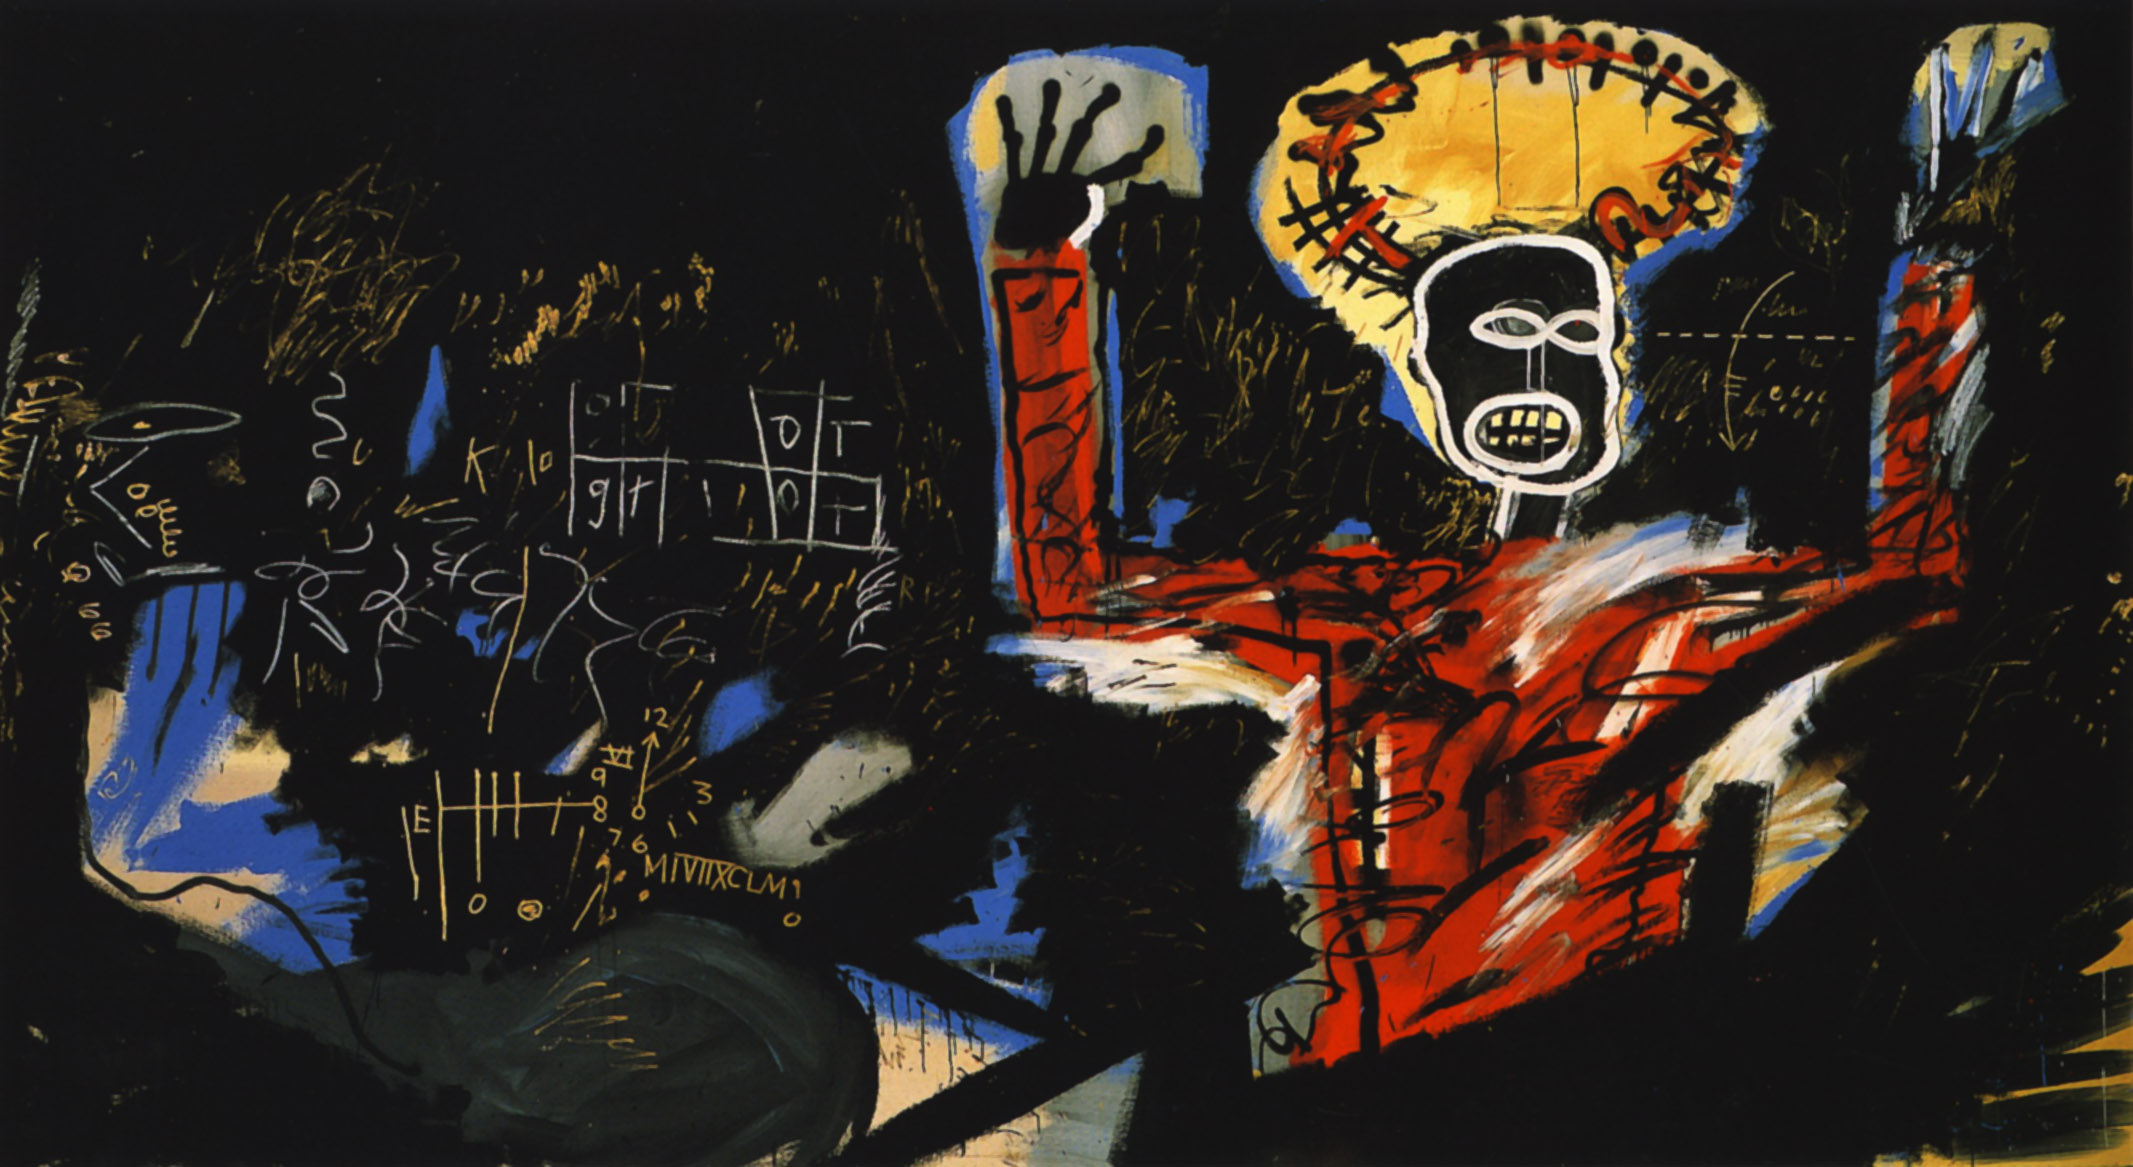 Profit I by Jean-Michel Basquiat - 1982 Colección privada